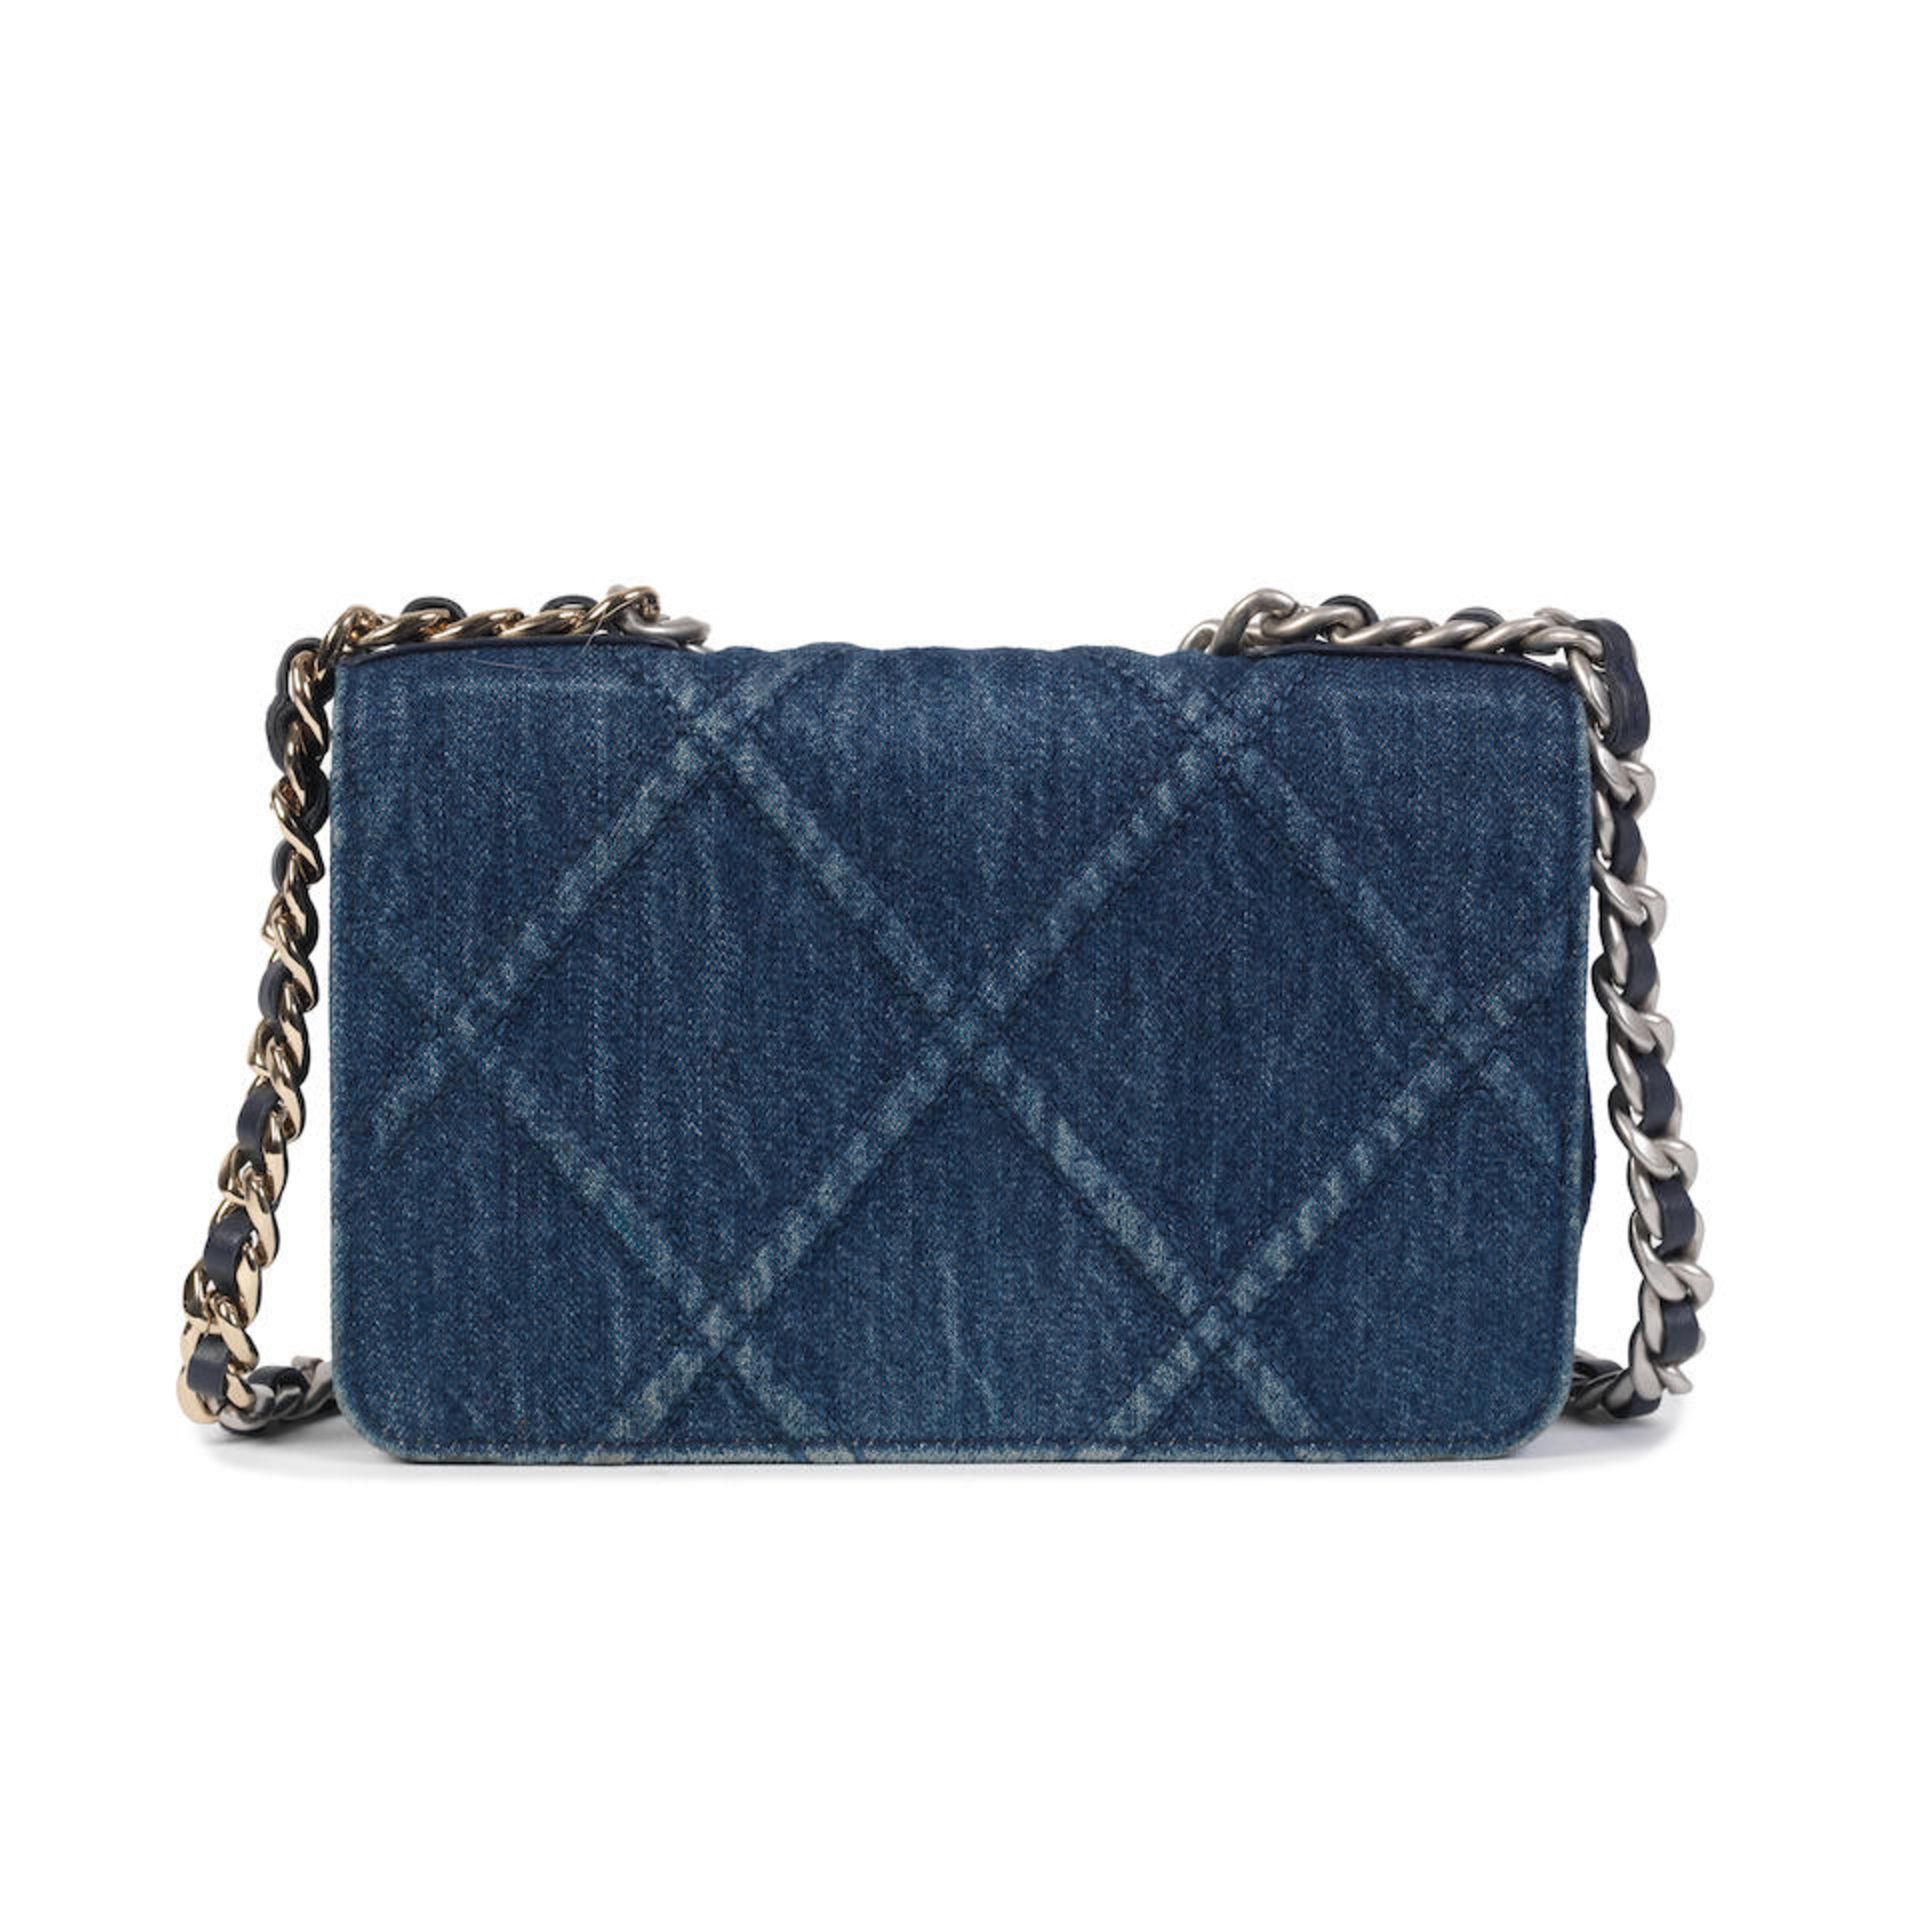 Virginie Viard for Chanel: a Blue Denim 19 Wallet on Chain (WOC) 2022 - Bild 2 aus 2